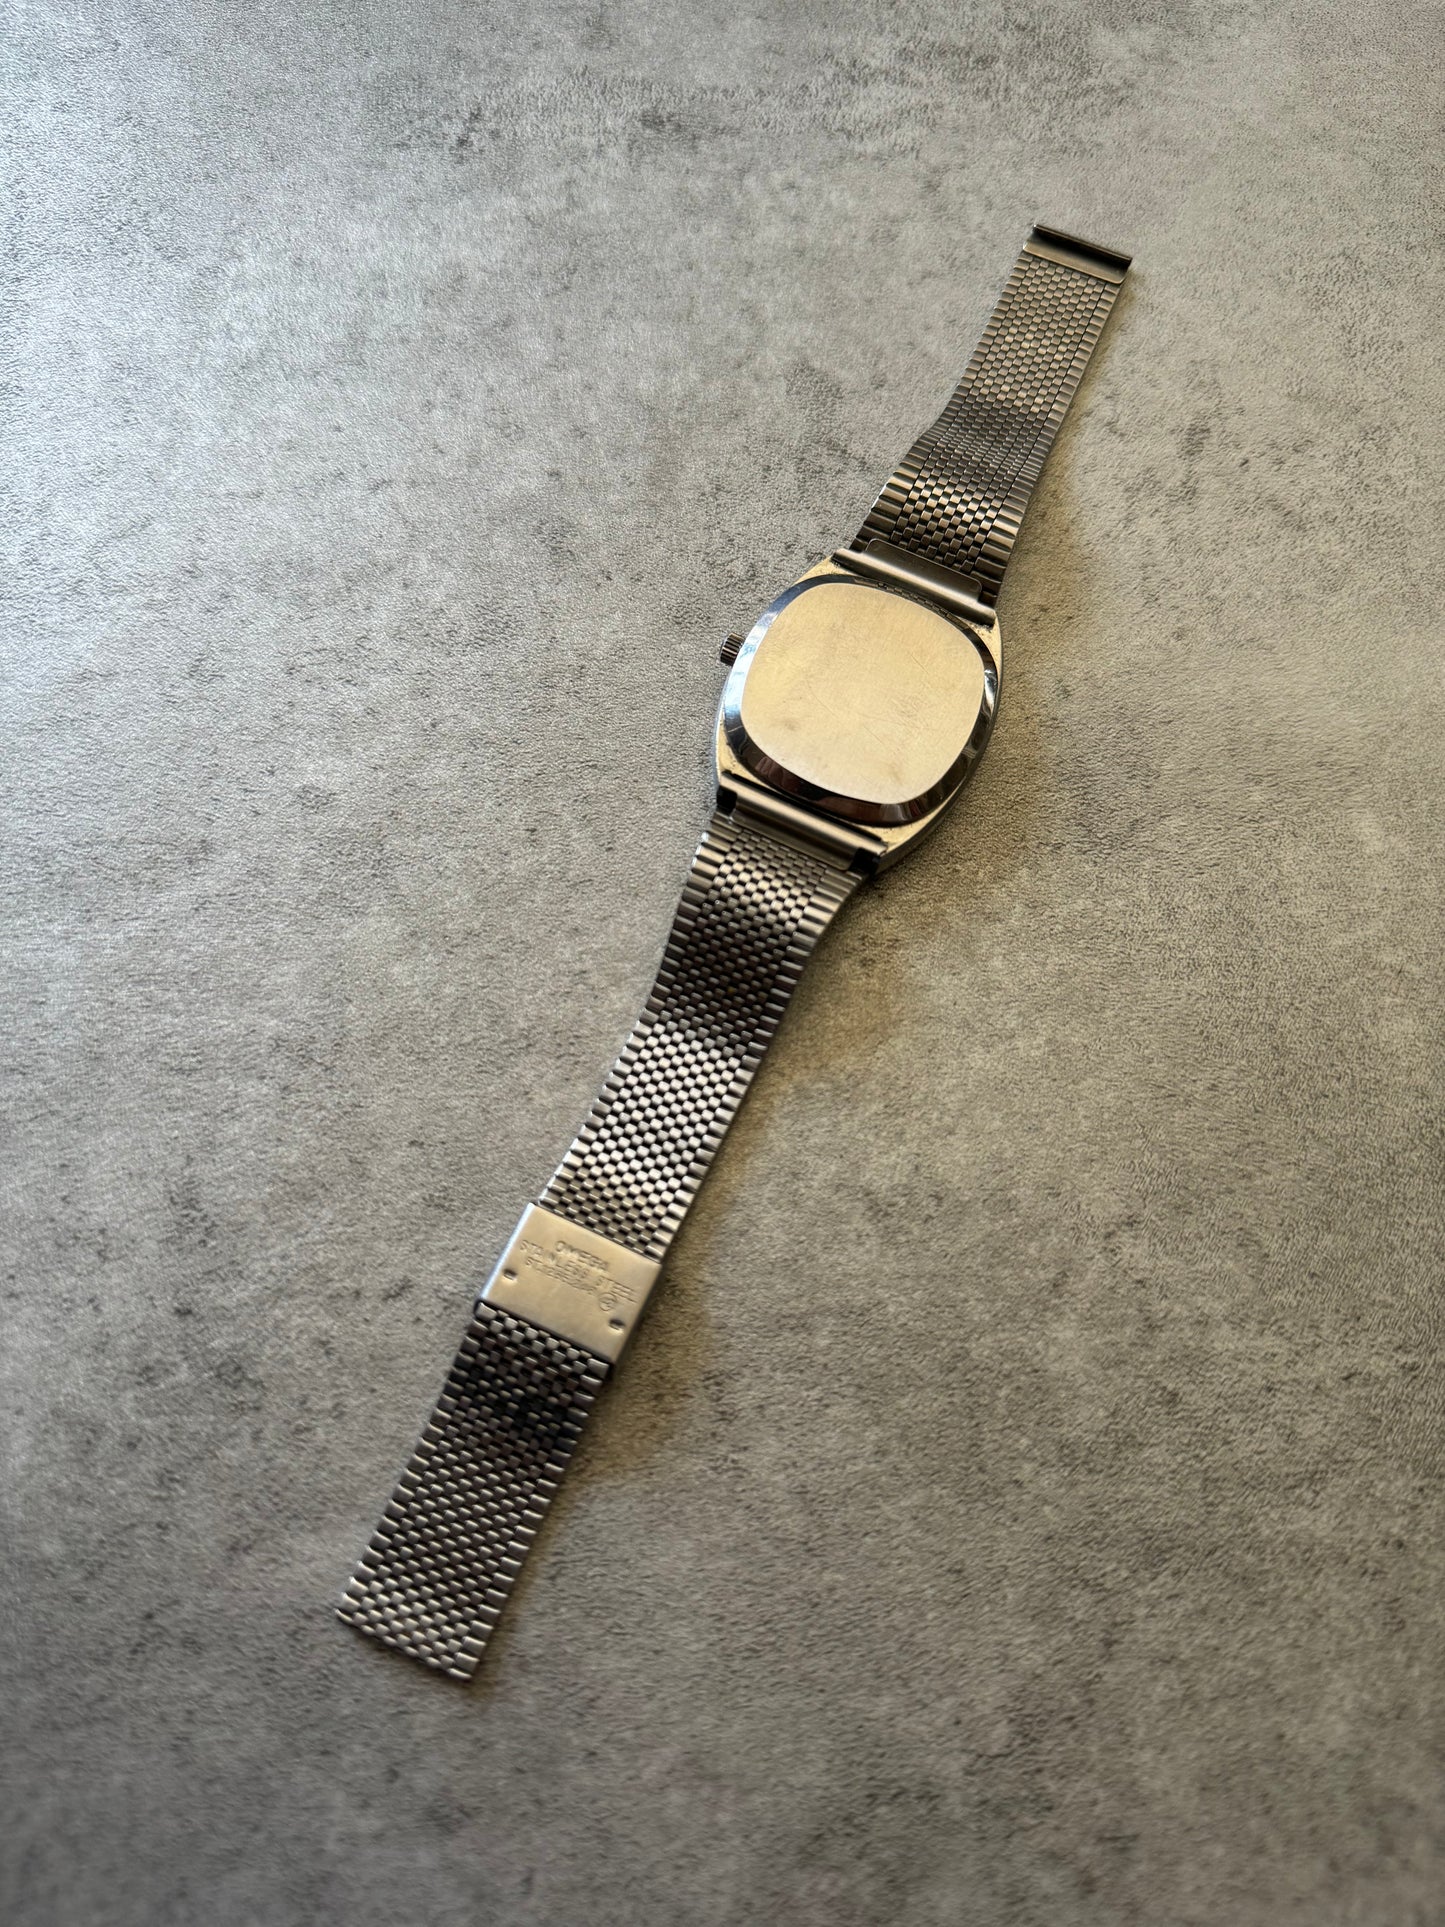 1970s Omega De Ville cal 1325 Silver Watch (OS) - 9